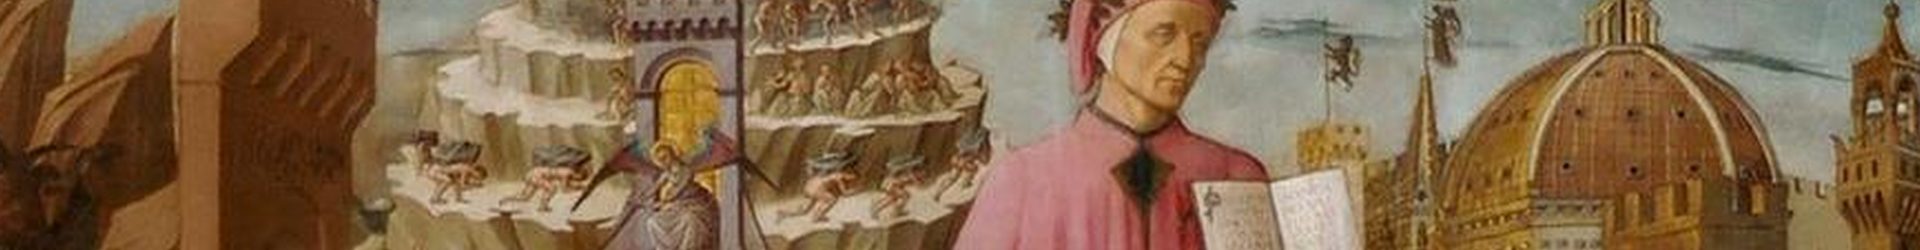 Candor lucis aeternae – lettera apostolica di Papa Francesco  per celebrare il 700° anniversario della morte di Dante Alighieri